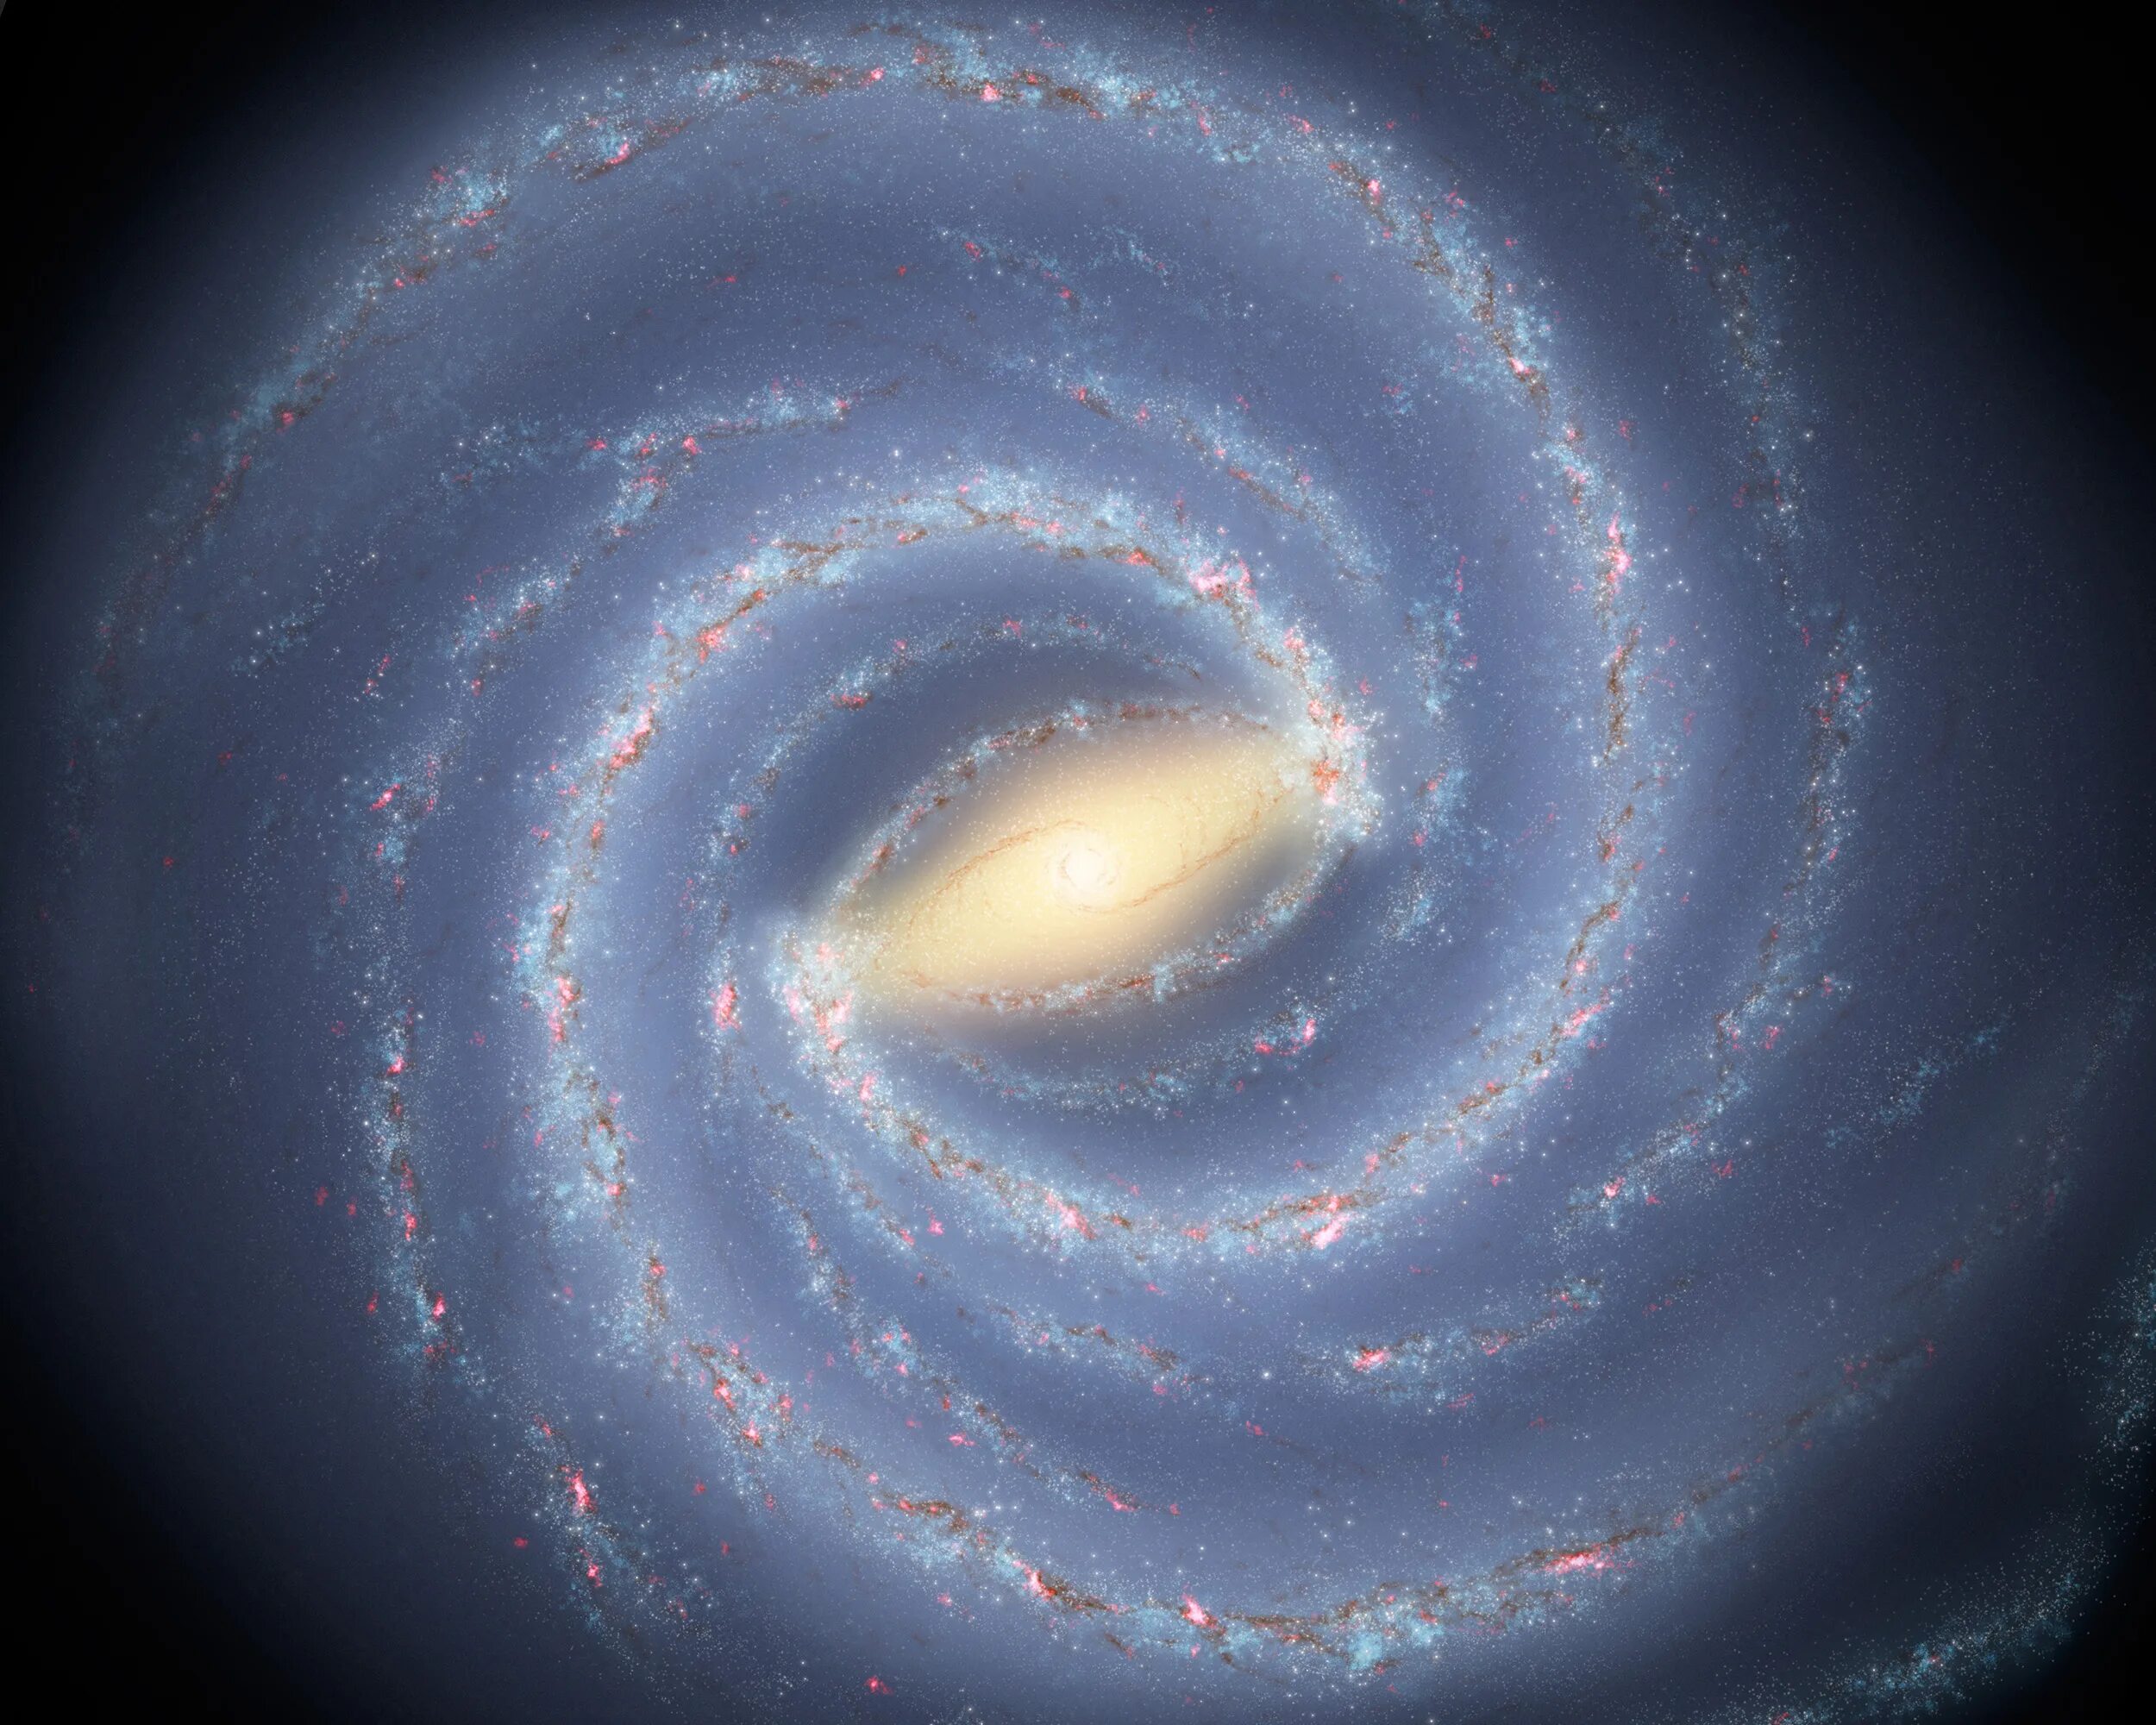 Наша галактика называется млечный путь. Наша Галактика Млечный путь. Галактика Млечный путь Солнечная система. Спиралевидная Галактика Млечный путь. Галактика Млечный путь планеты солнечной системы.